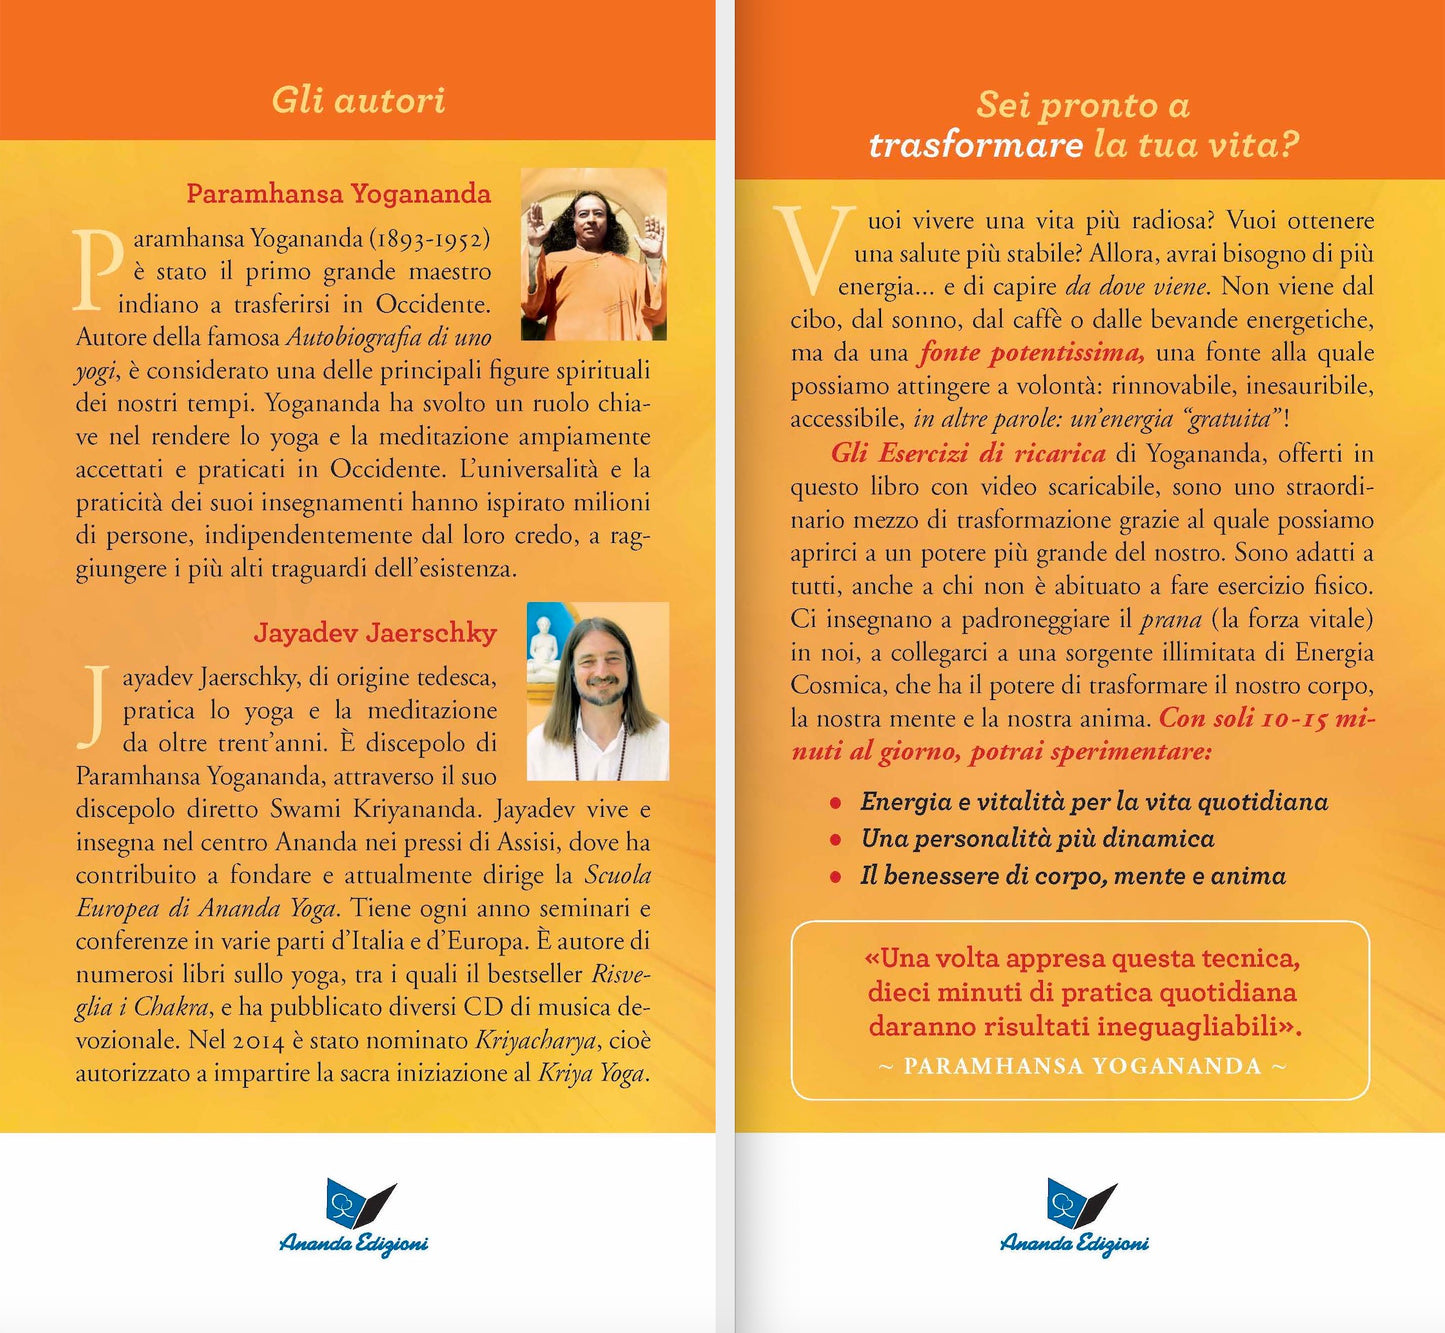 Gli Esercizi di ricarica di Paramhansa Yogananda Nuova Edizione. Come trasformare corpo, mente e anima con l'energia vitale